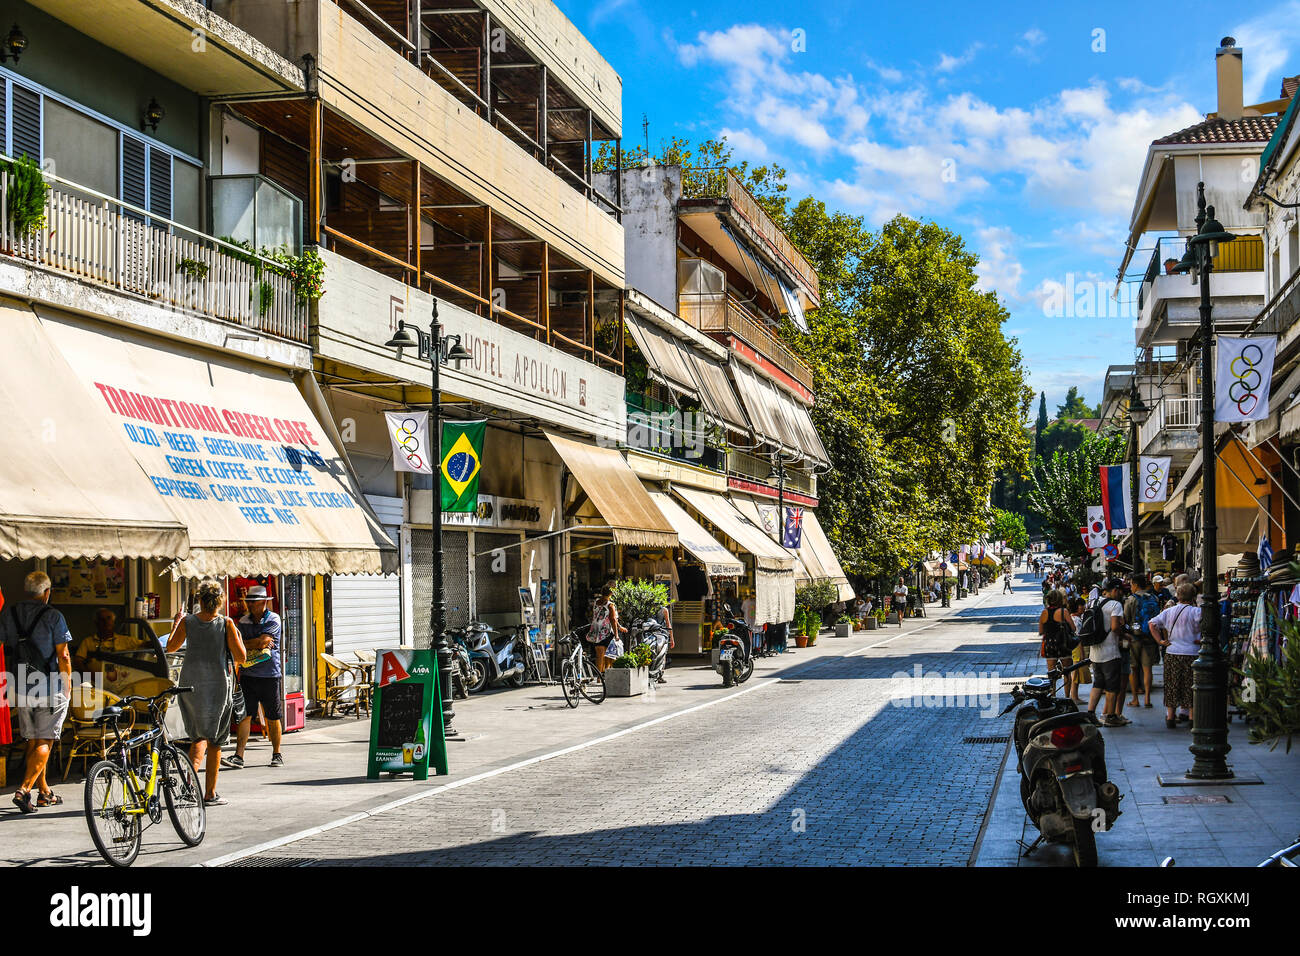 Olympia, Griechenland - 16. September 2018: Touristen shop der lokalen Märkte, Geschäfte und Cafés im Dorf Olympia, Griechenland. Stockfoto